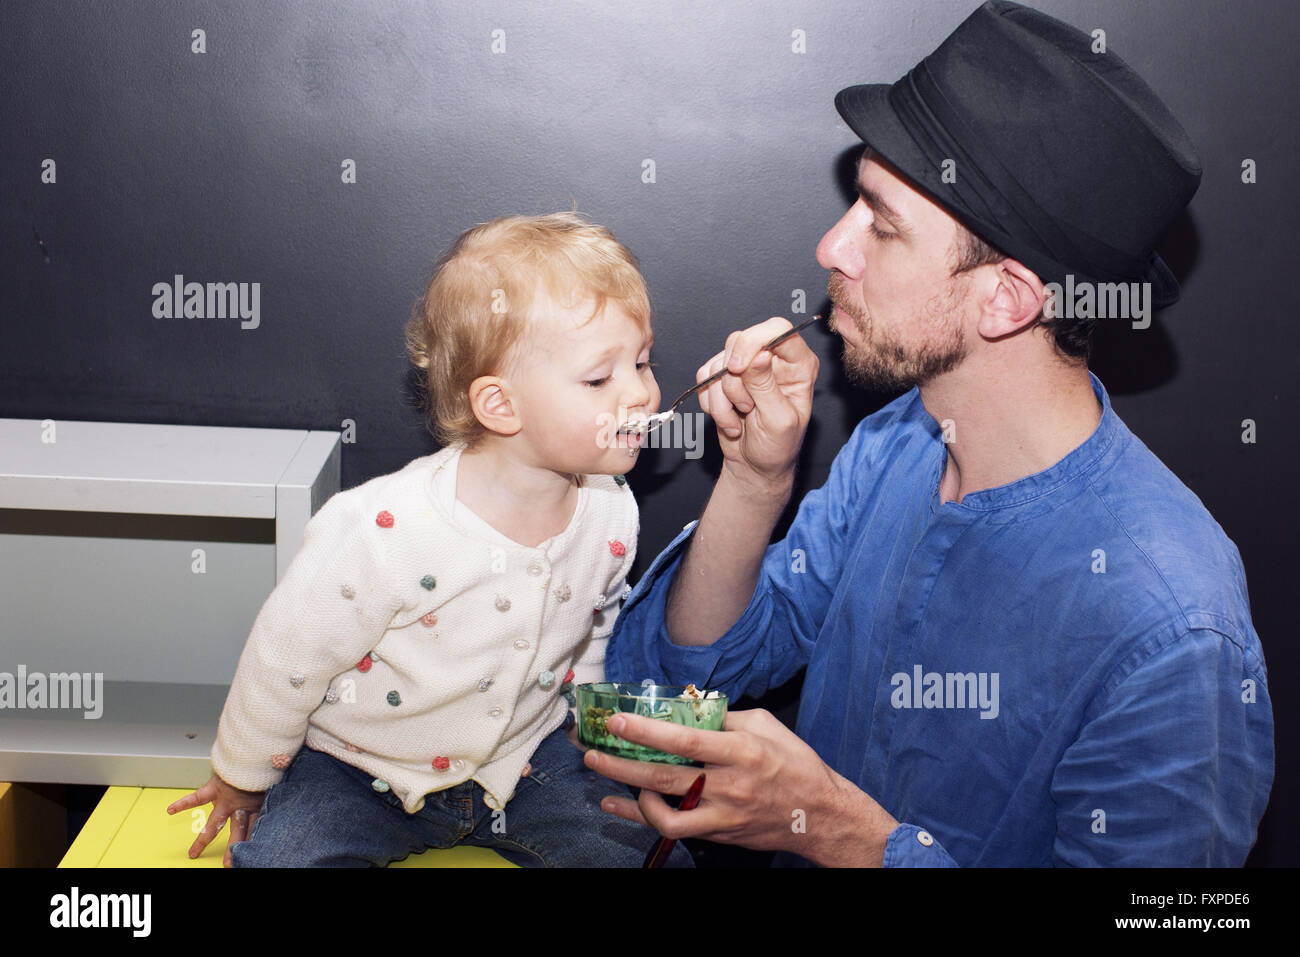 Father spoon feeding toddler Stock Photo